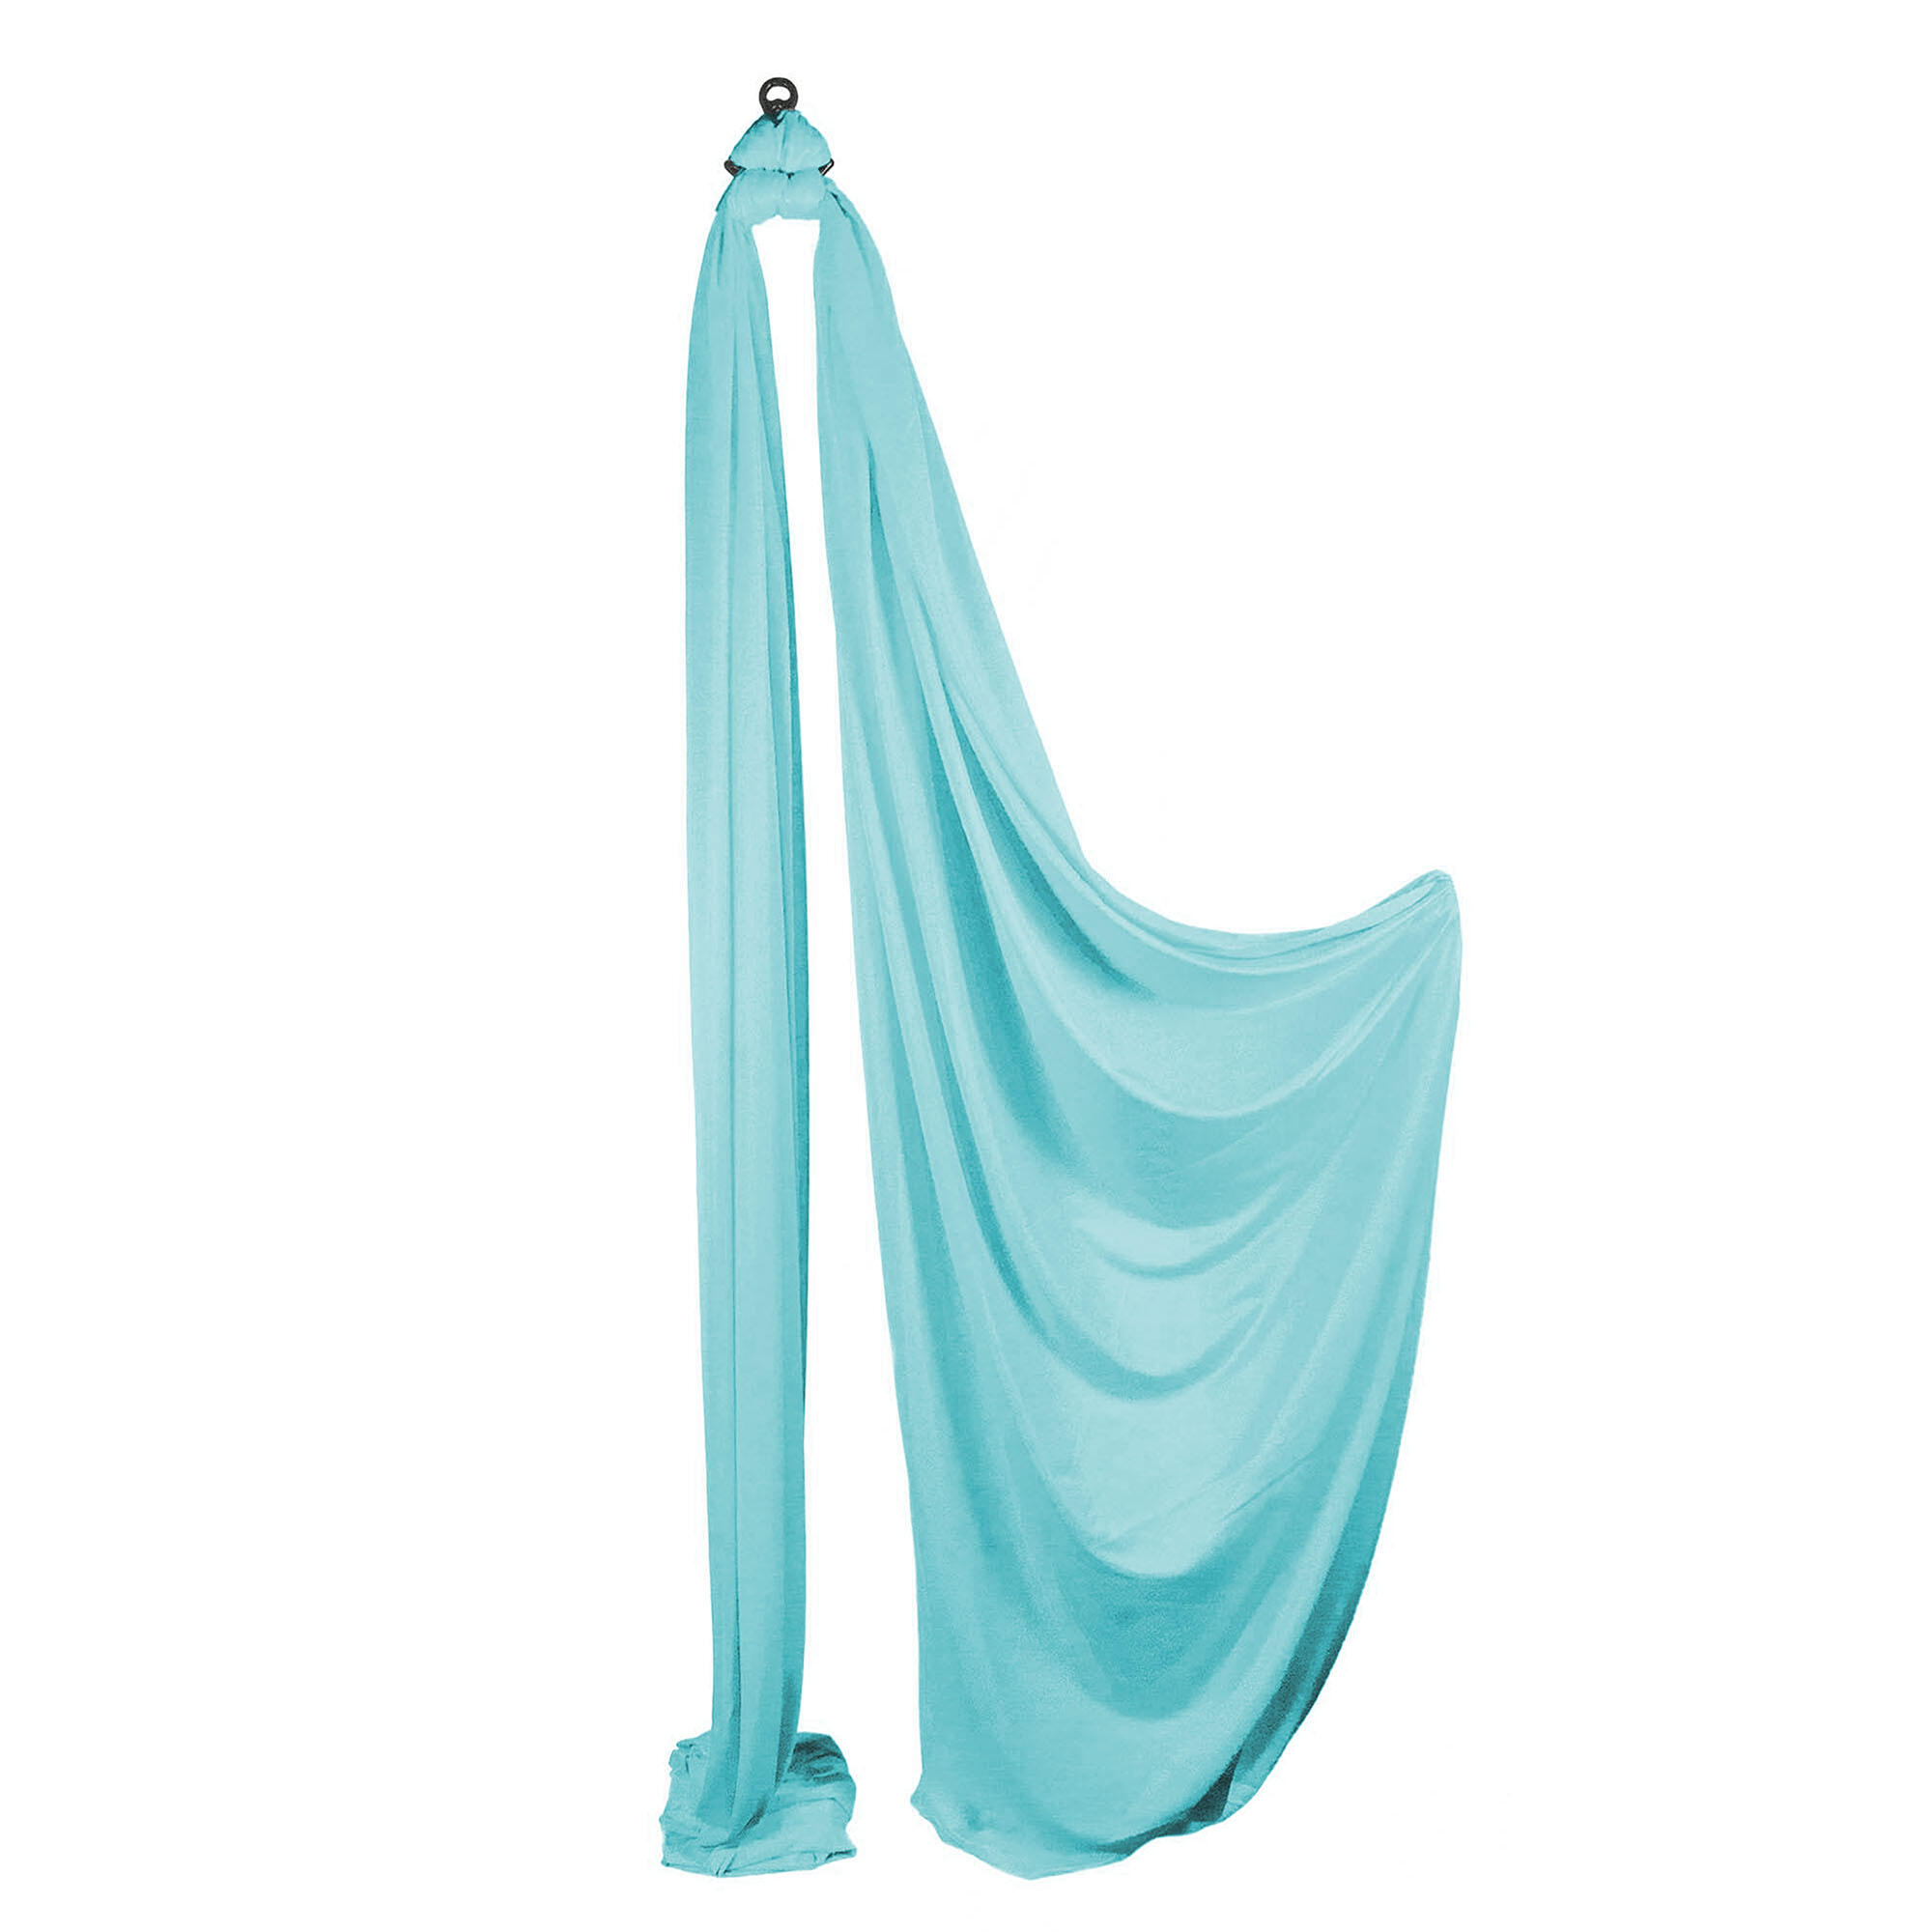 Firetoys Aerial Silk (Aerial Fabric / Tissus) - Celeste 1/5